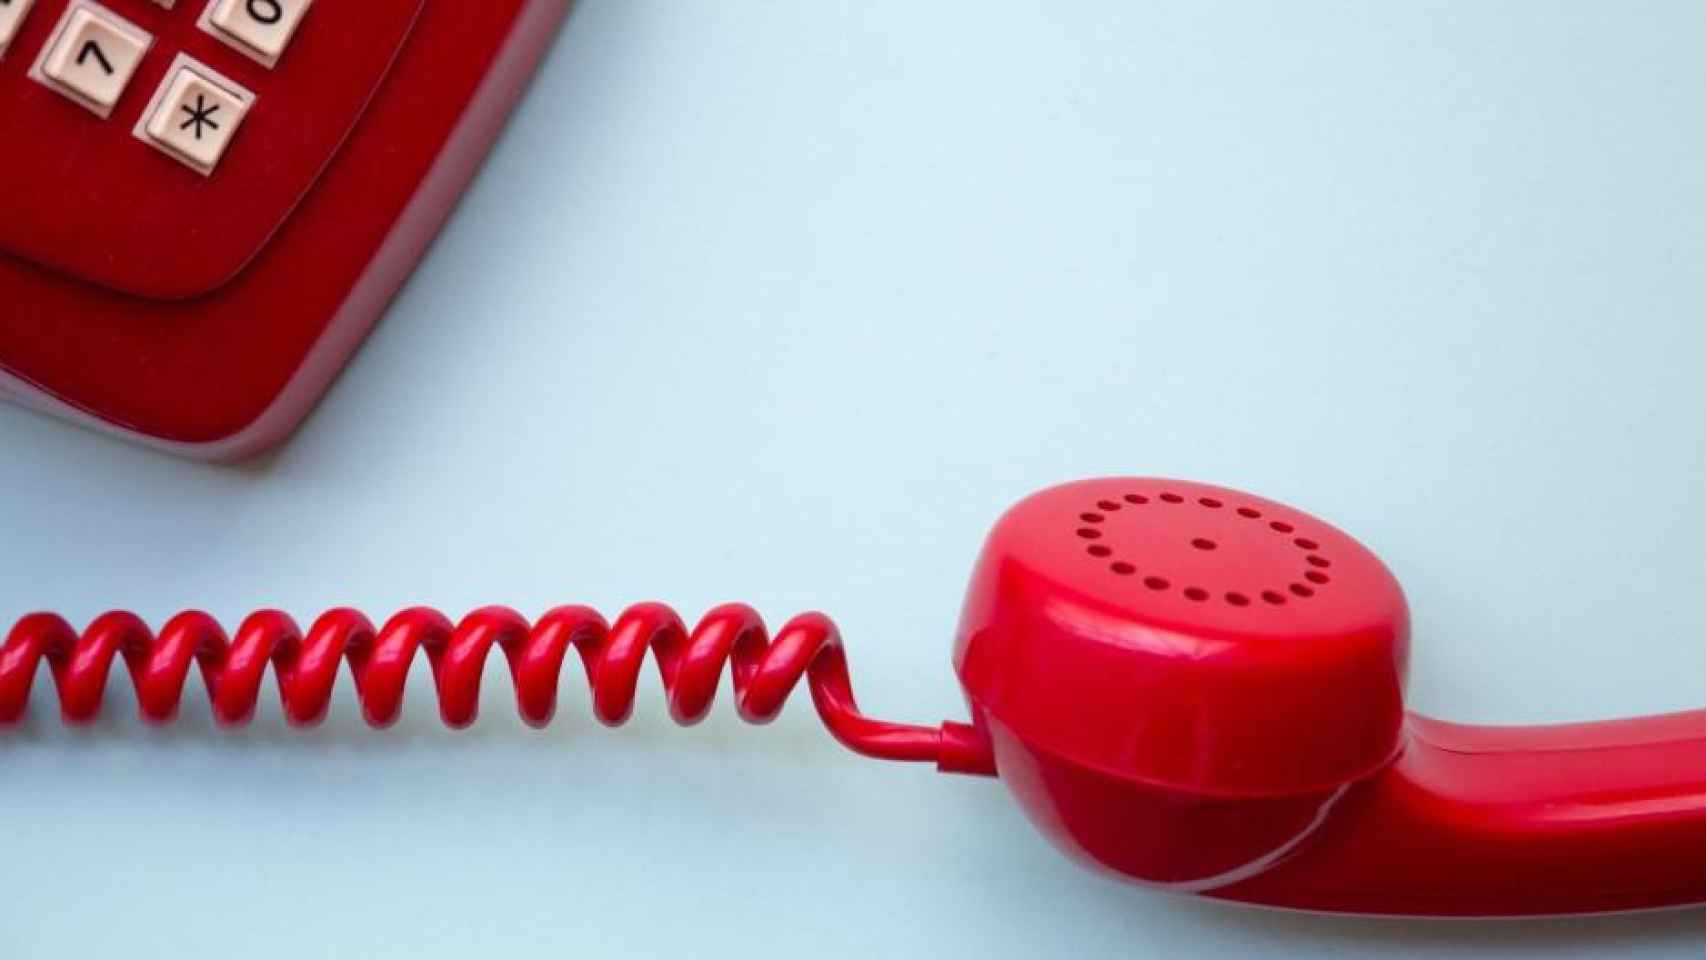 Un teléfono rojo, aparato necesario para la telefonía